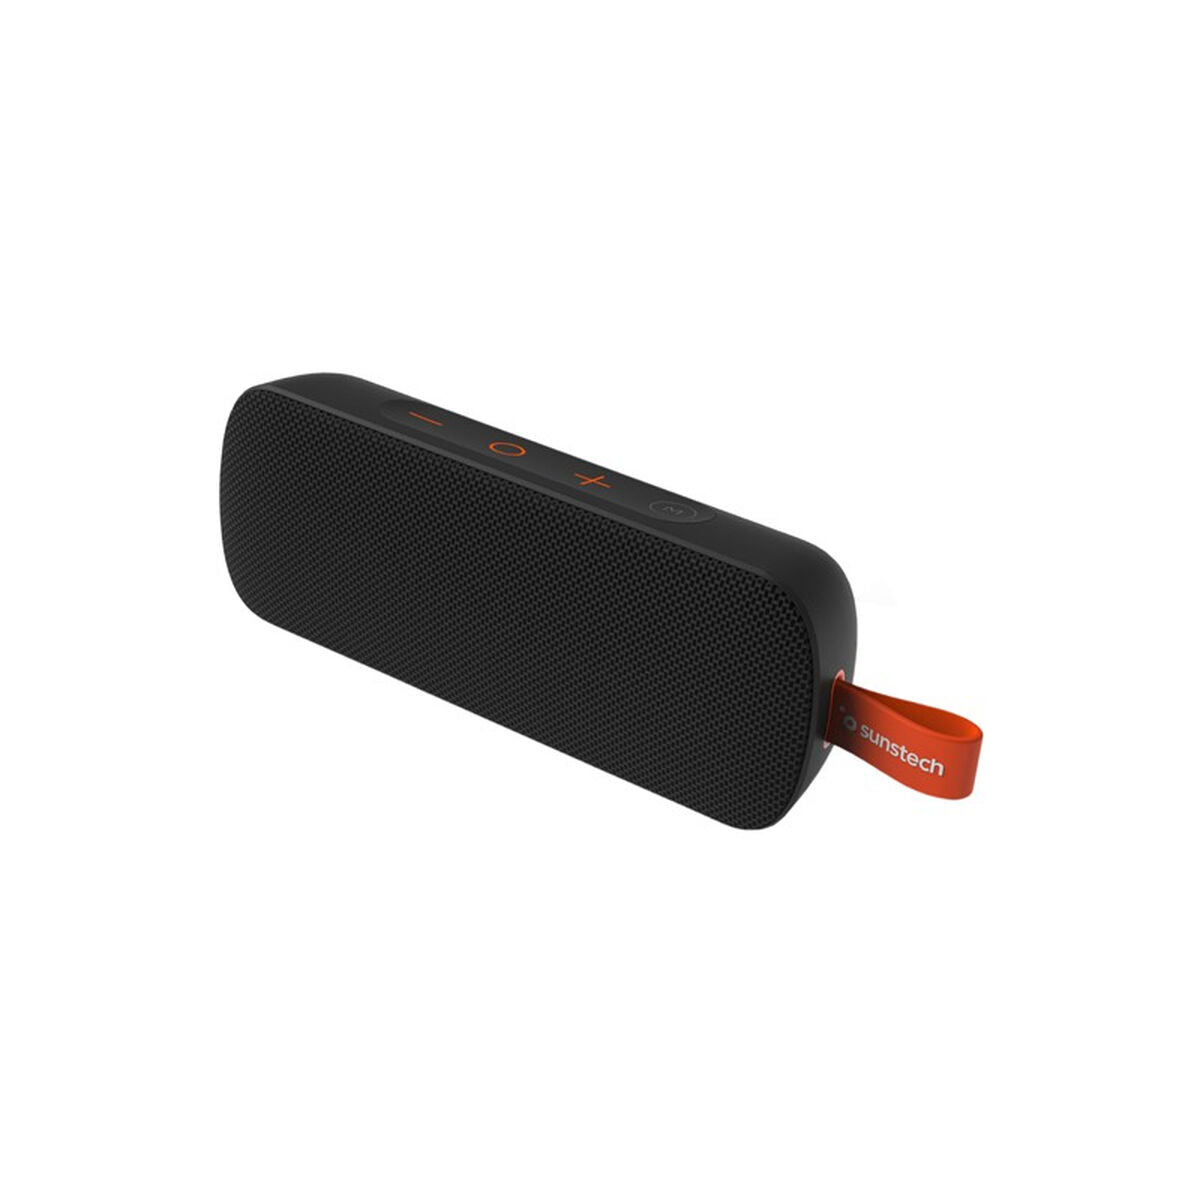 Dankzij de draagbare Bluetooth®-luidsprekers Sunstech BRICKLARGEBK Zwart 2100 W 10 W